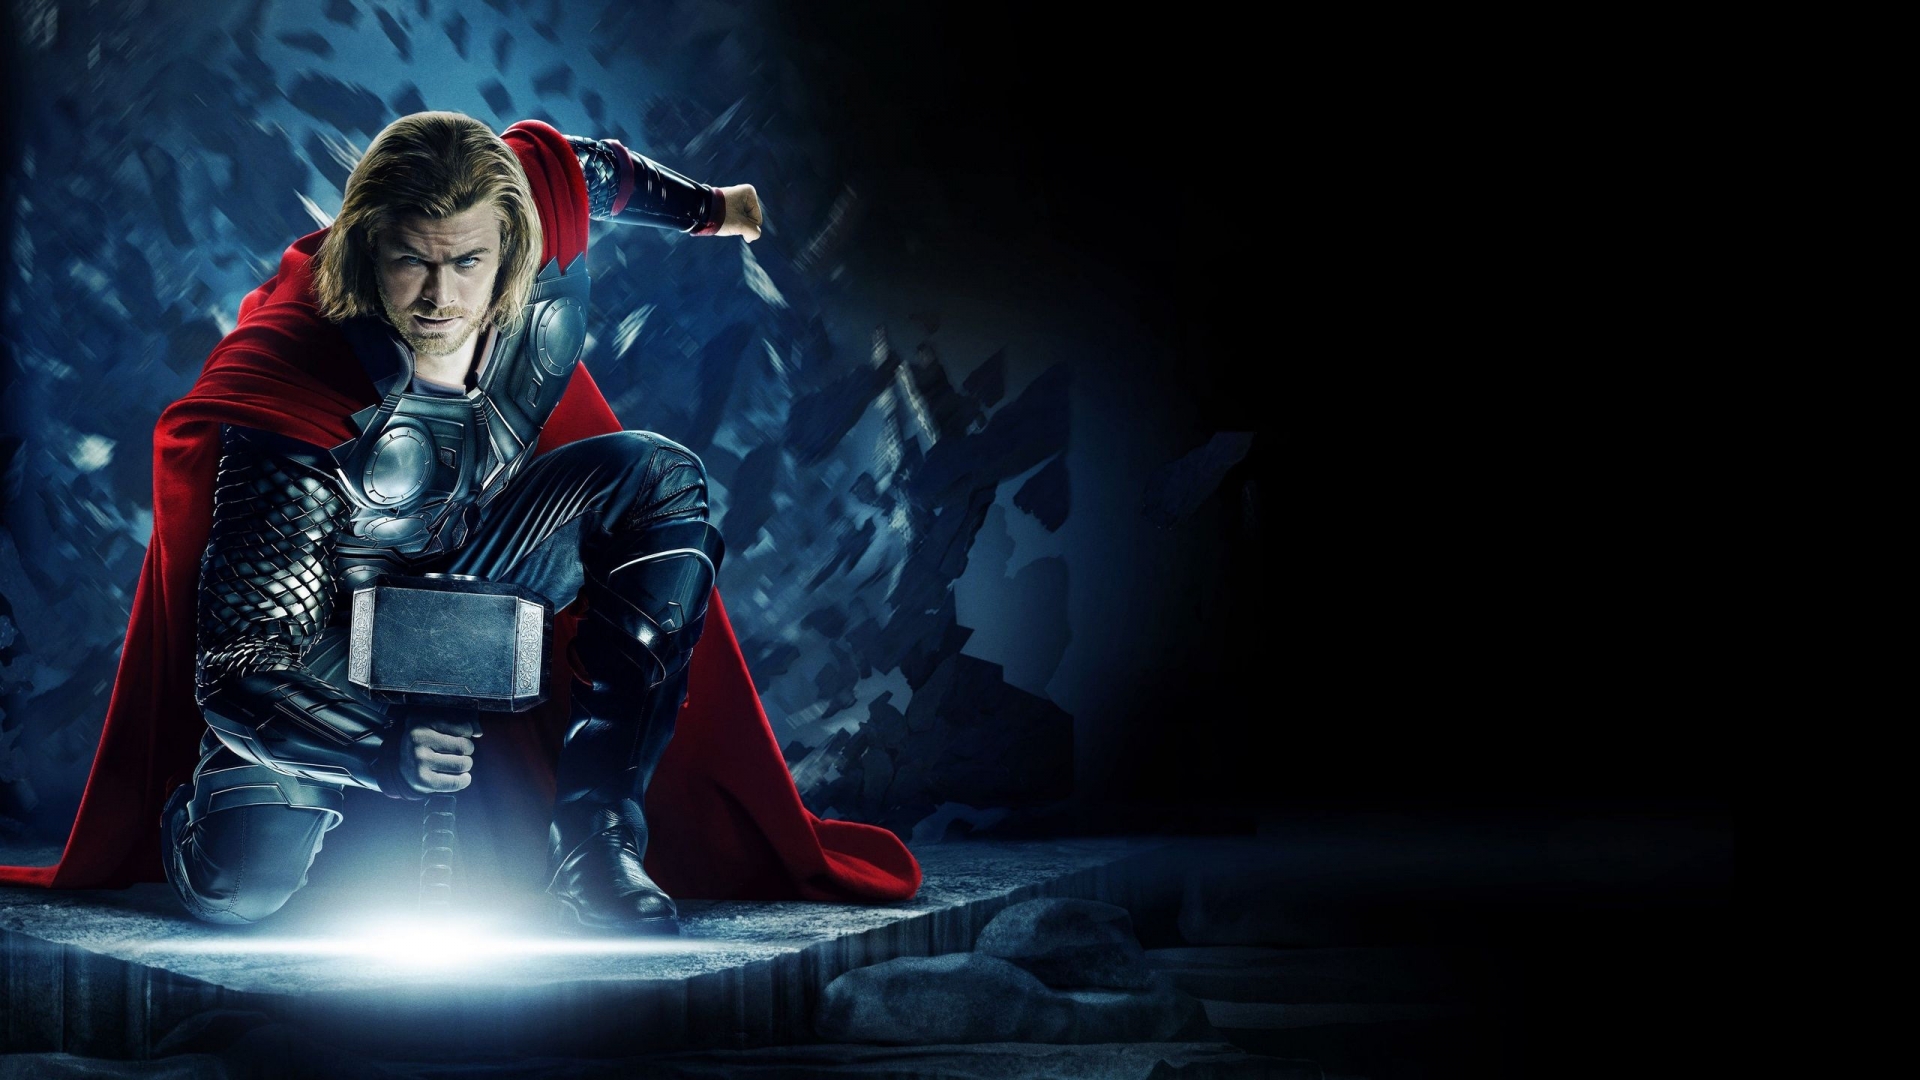 Thor Avengers for 1920 x 1080 HDTV 1080p resolution